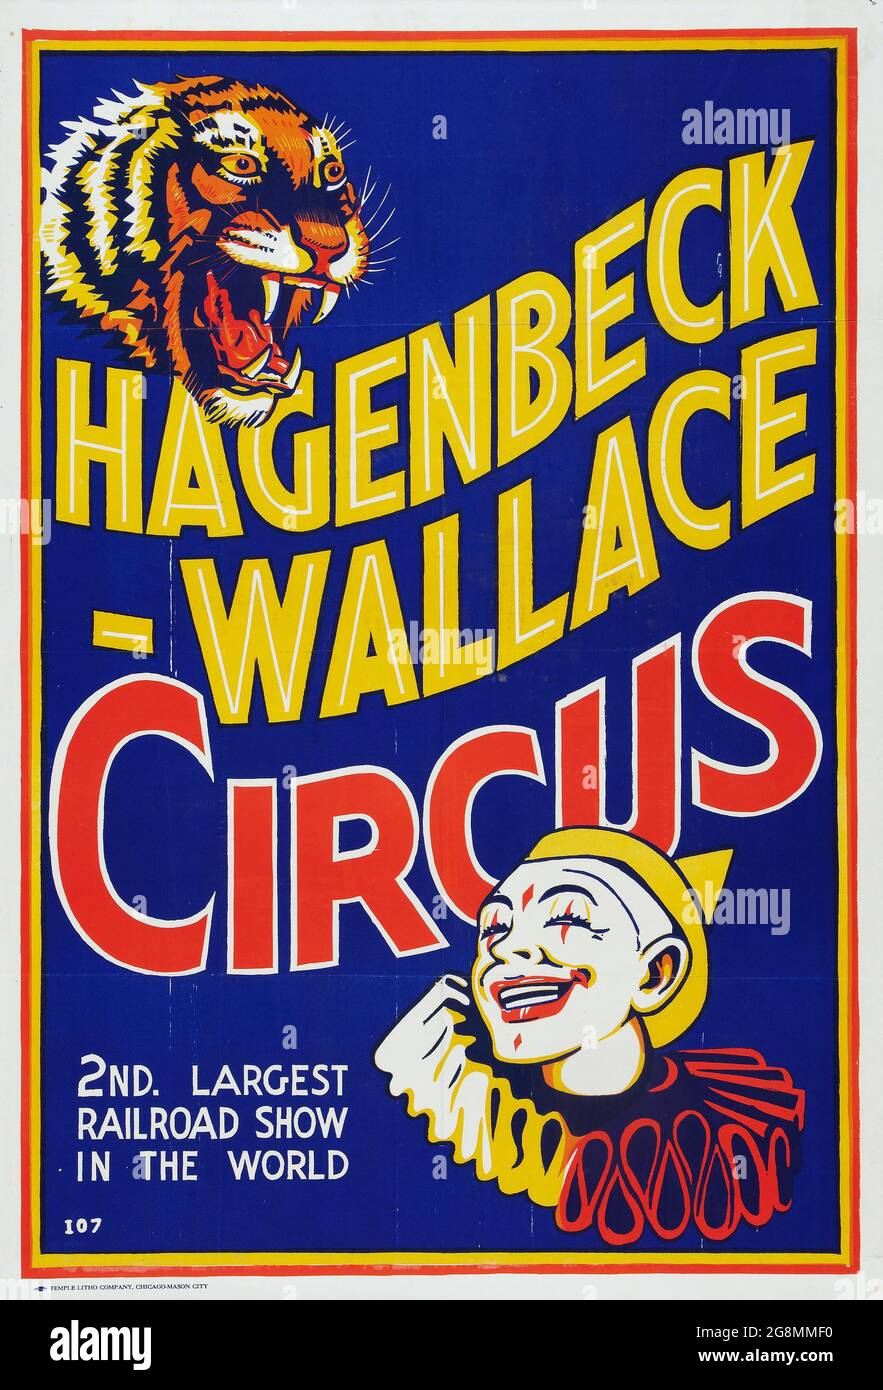 Vintage Circus Poster: Hagenbeck-Wallace Circus. Zweitgrößte Eisenbahnmesse der Welt. 1937. Ein Tiger und ein Clown. Stockfoto